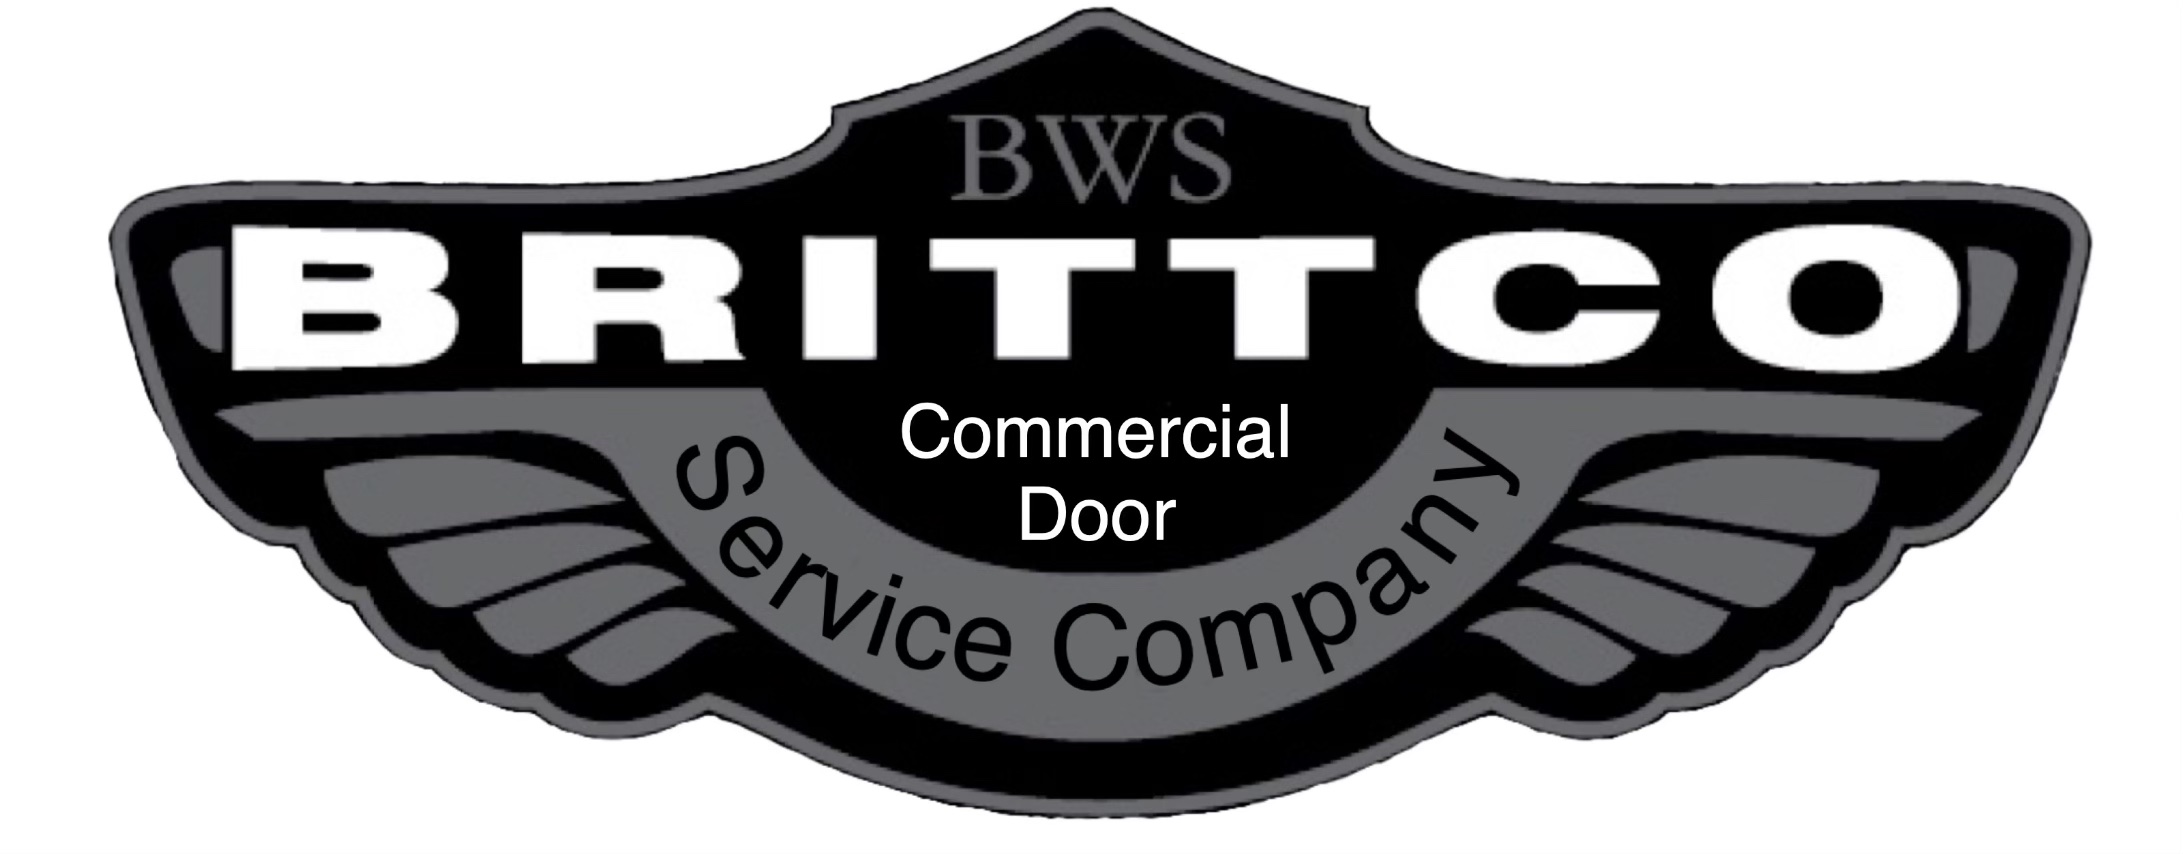 Brittco Door Company Logo